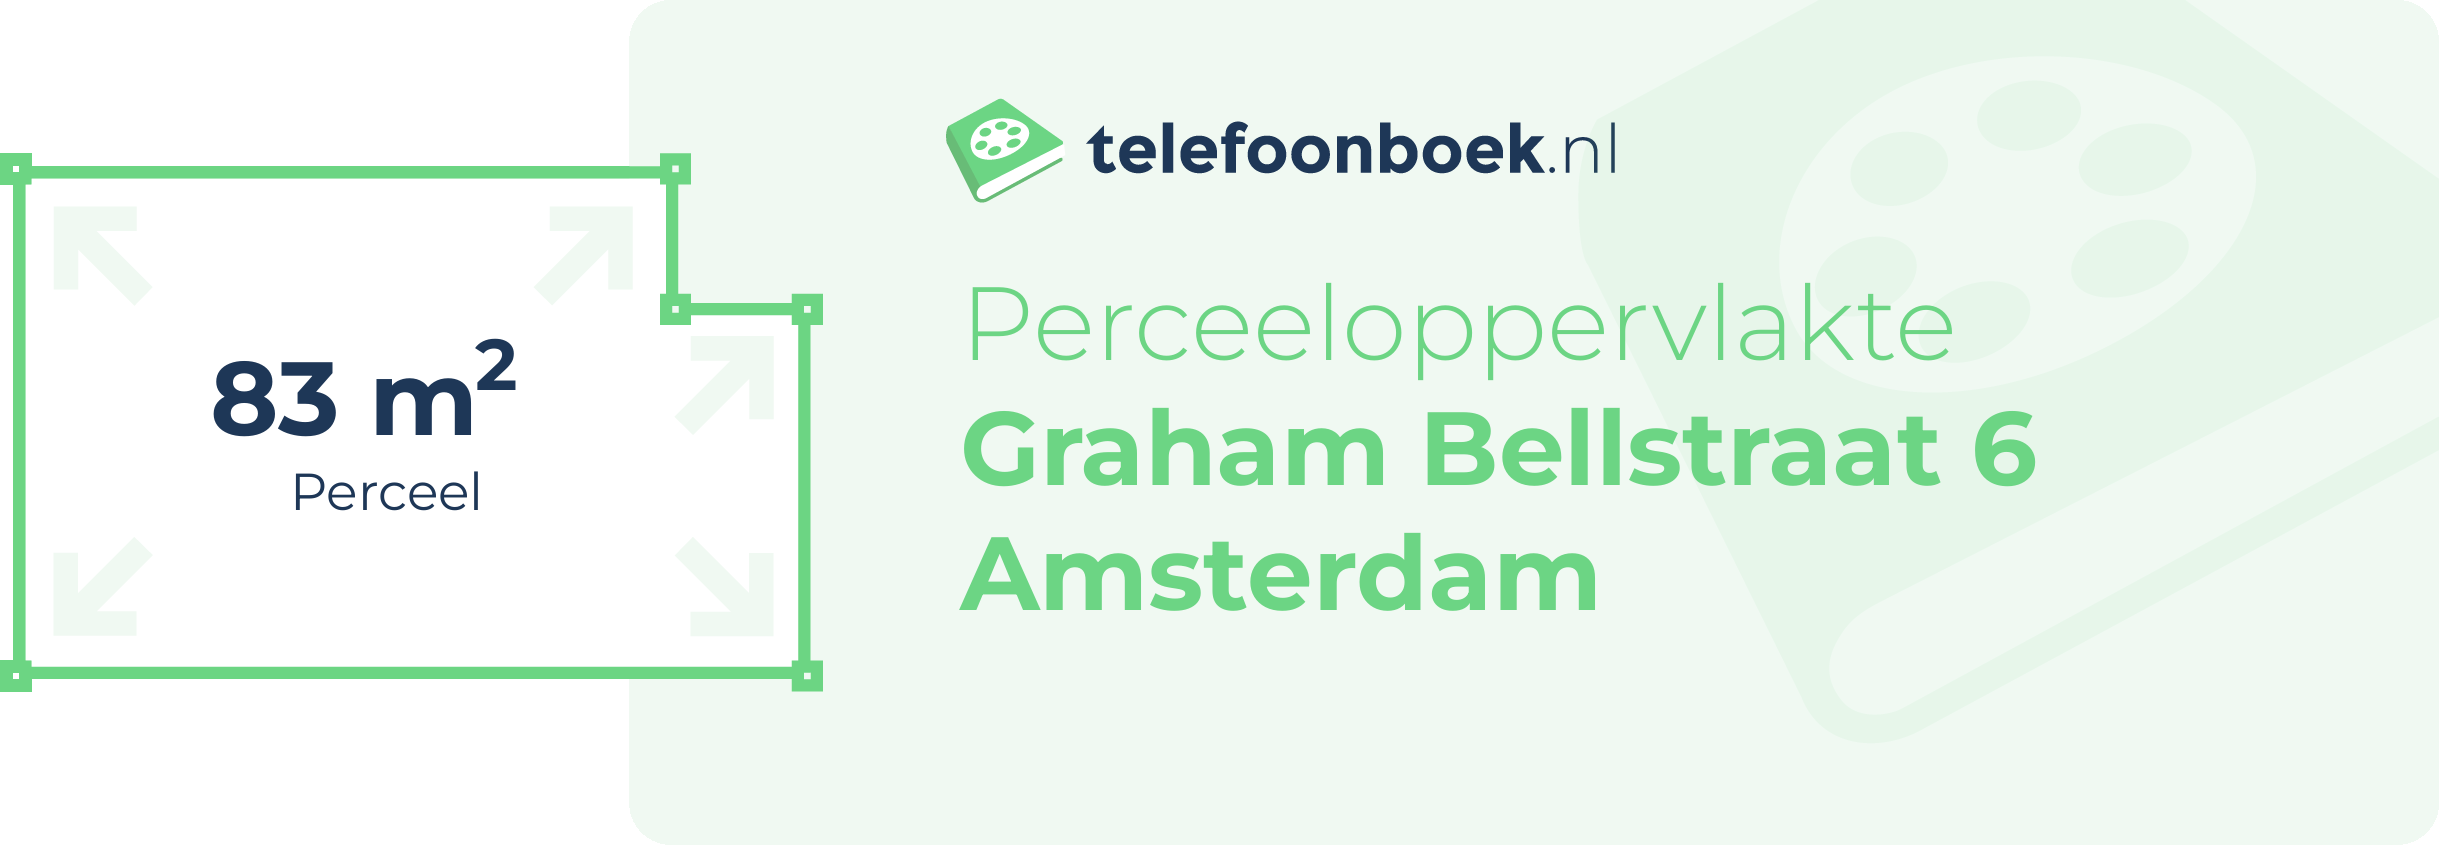 Perceeloppervlakte Graham Bellstraat 6 Amsterdam